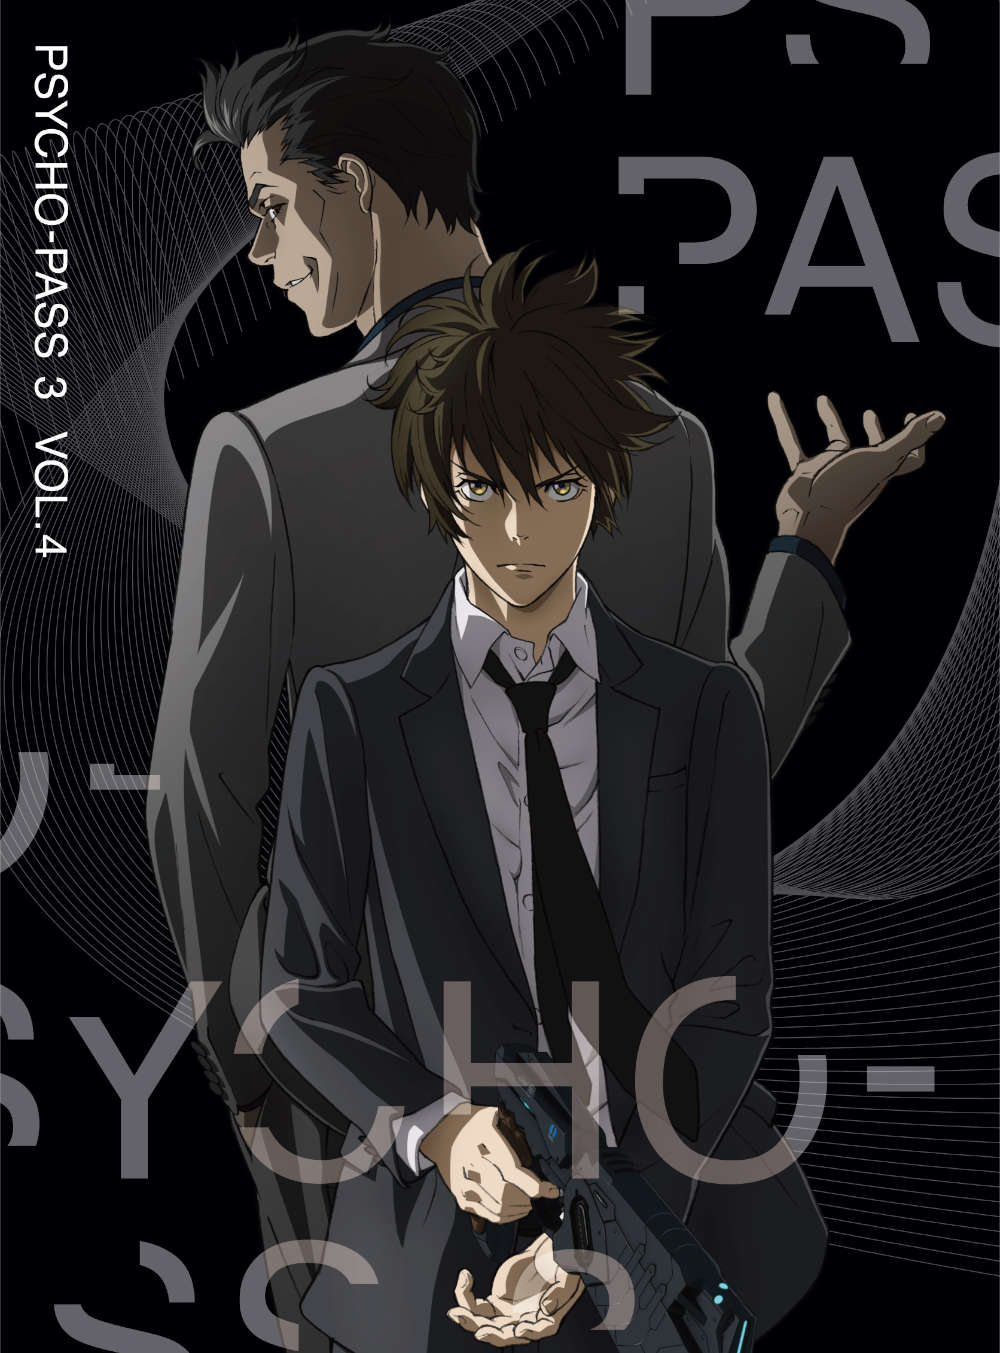 PSYCHO-PASS TCRpX 3 Vol.4 DVD 񐶎Y